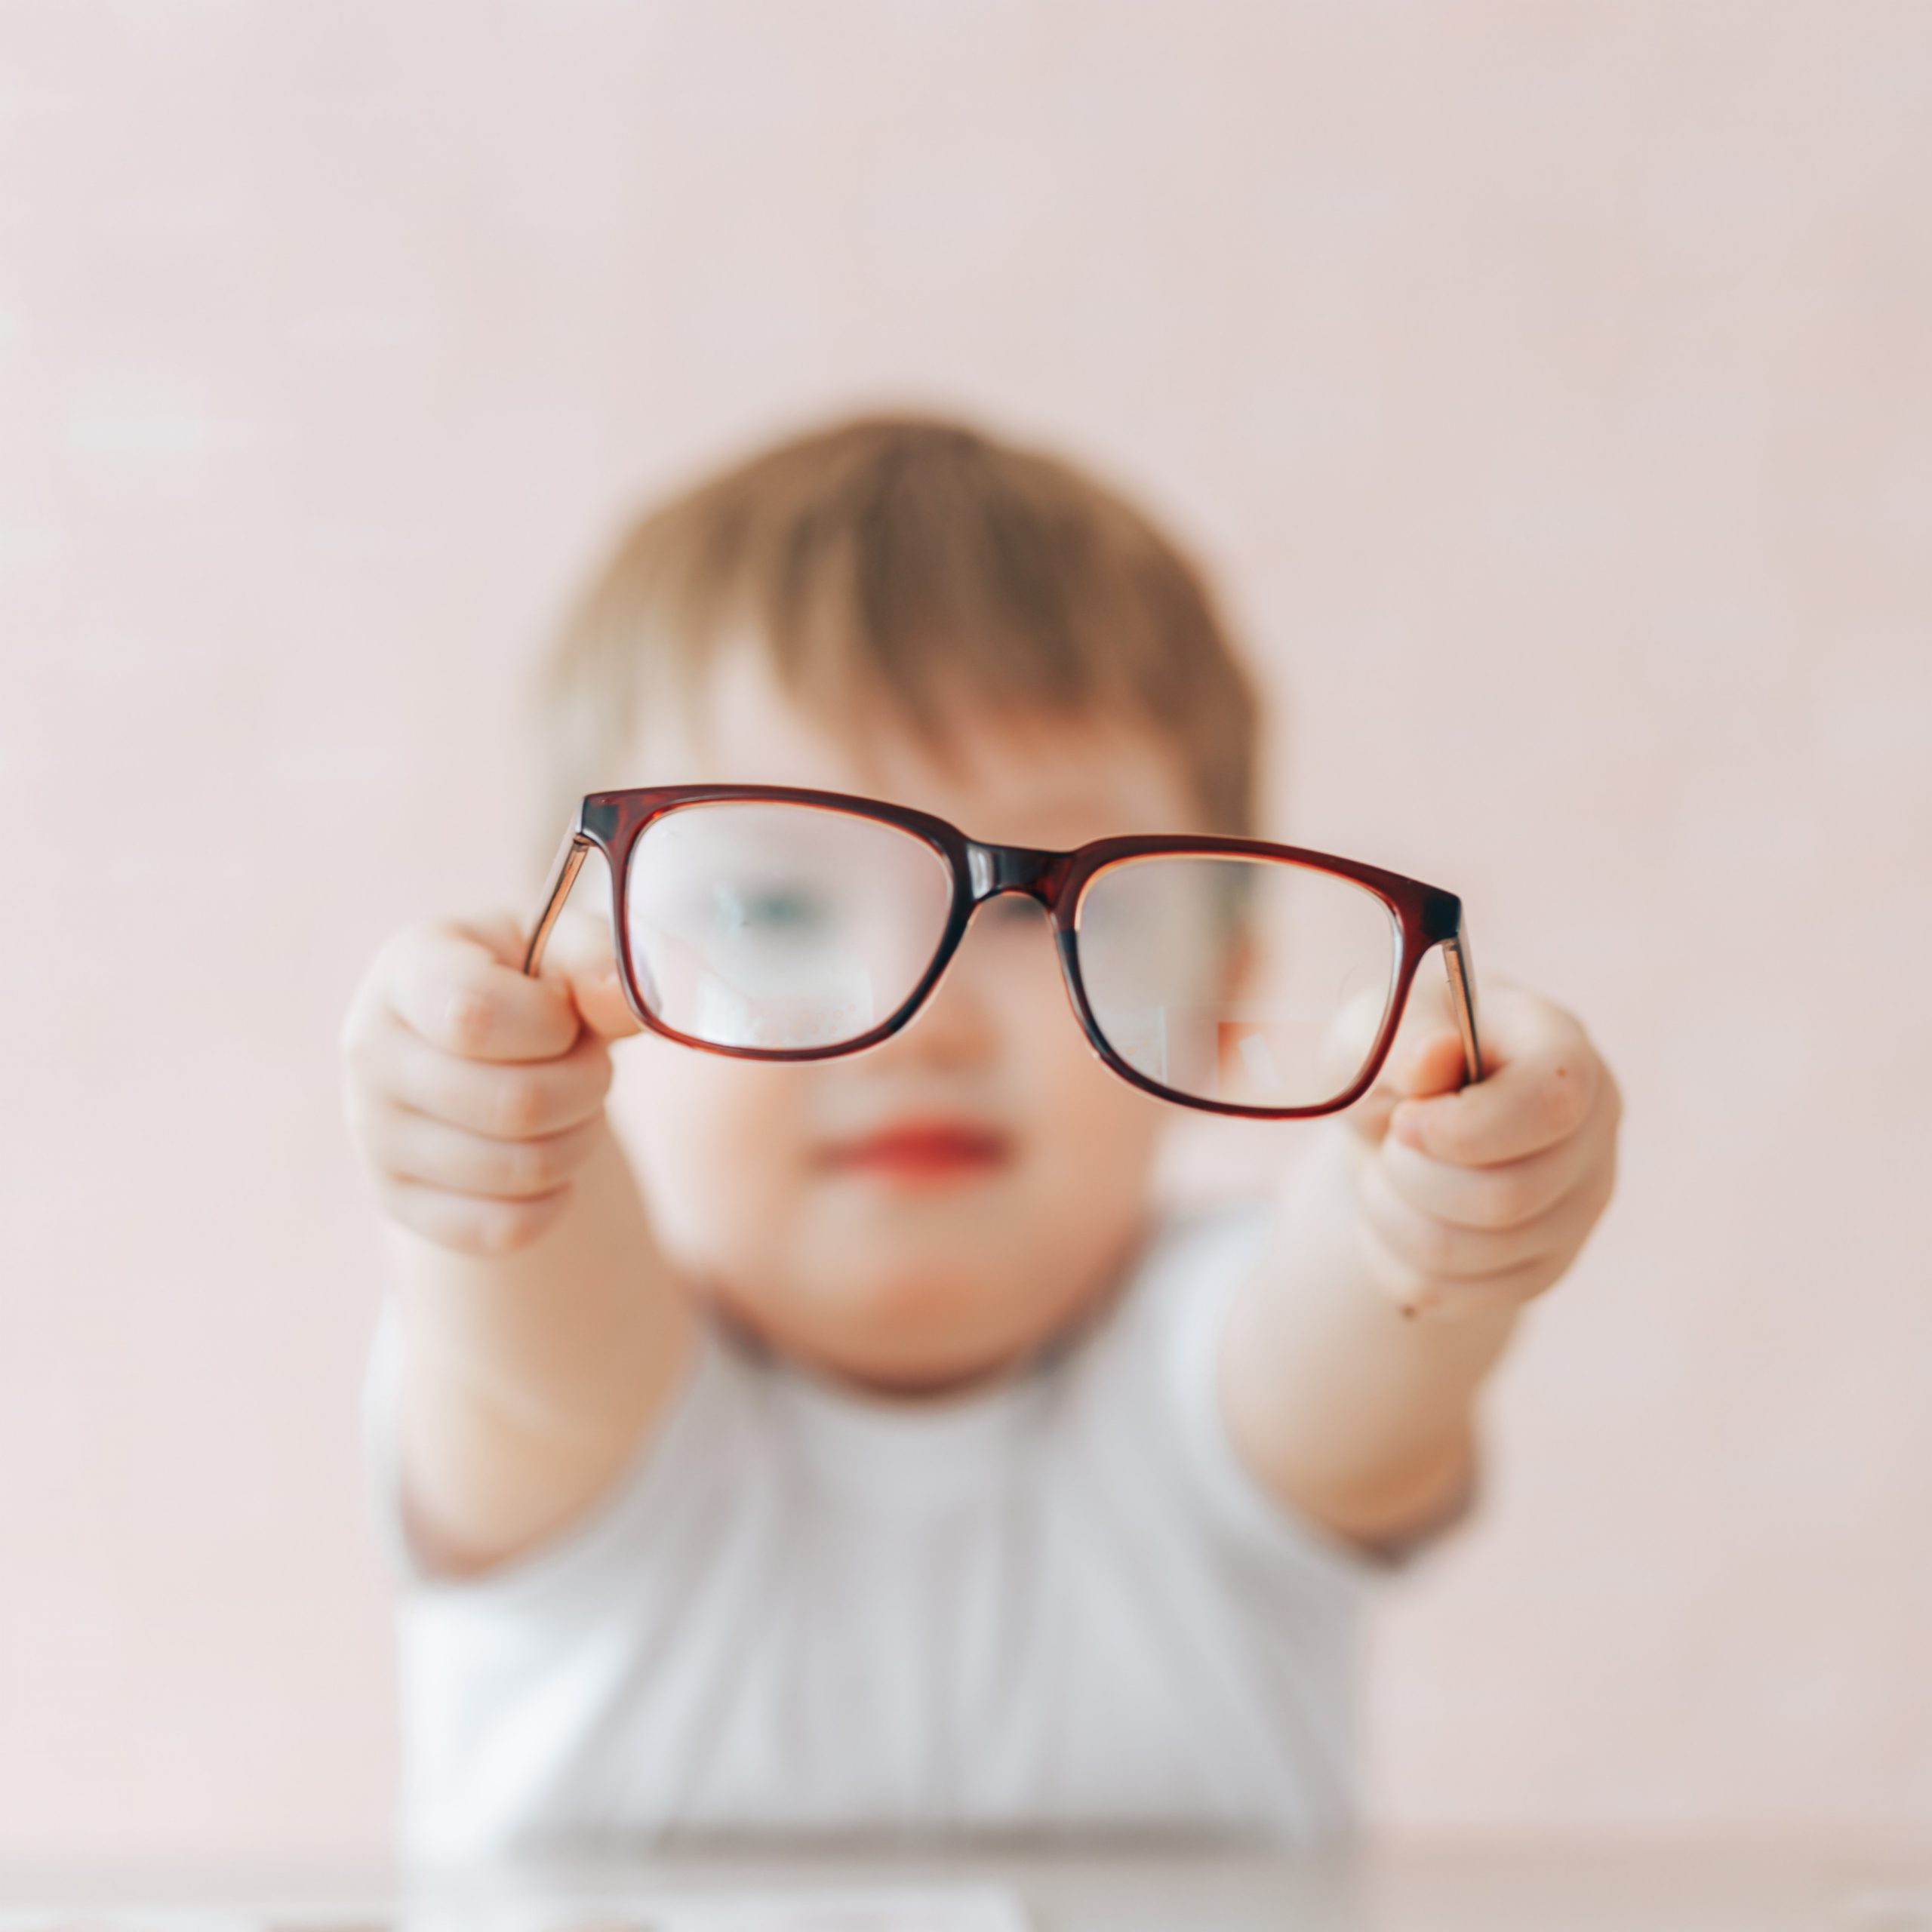 Child holding up eyeglasses